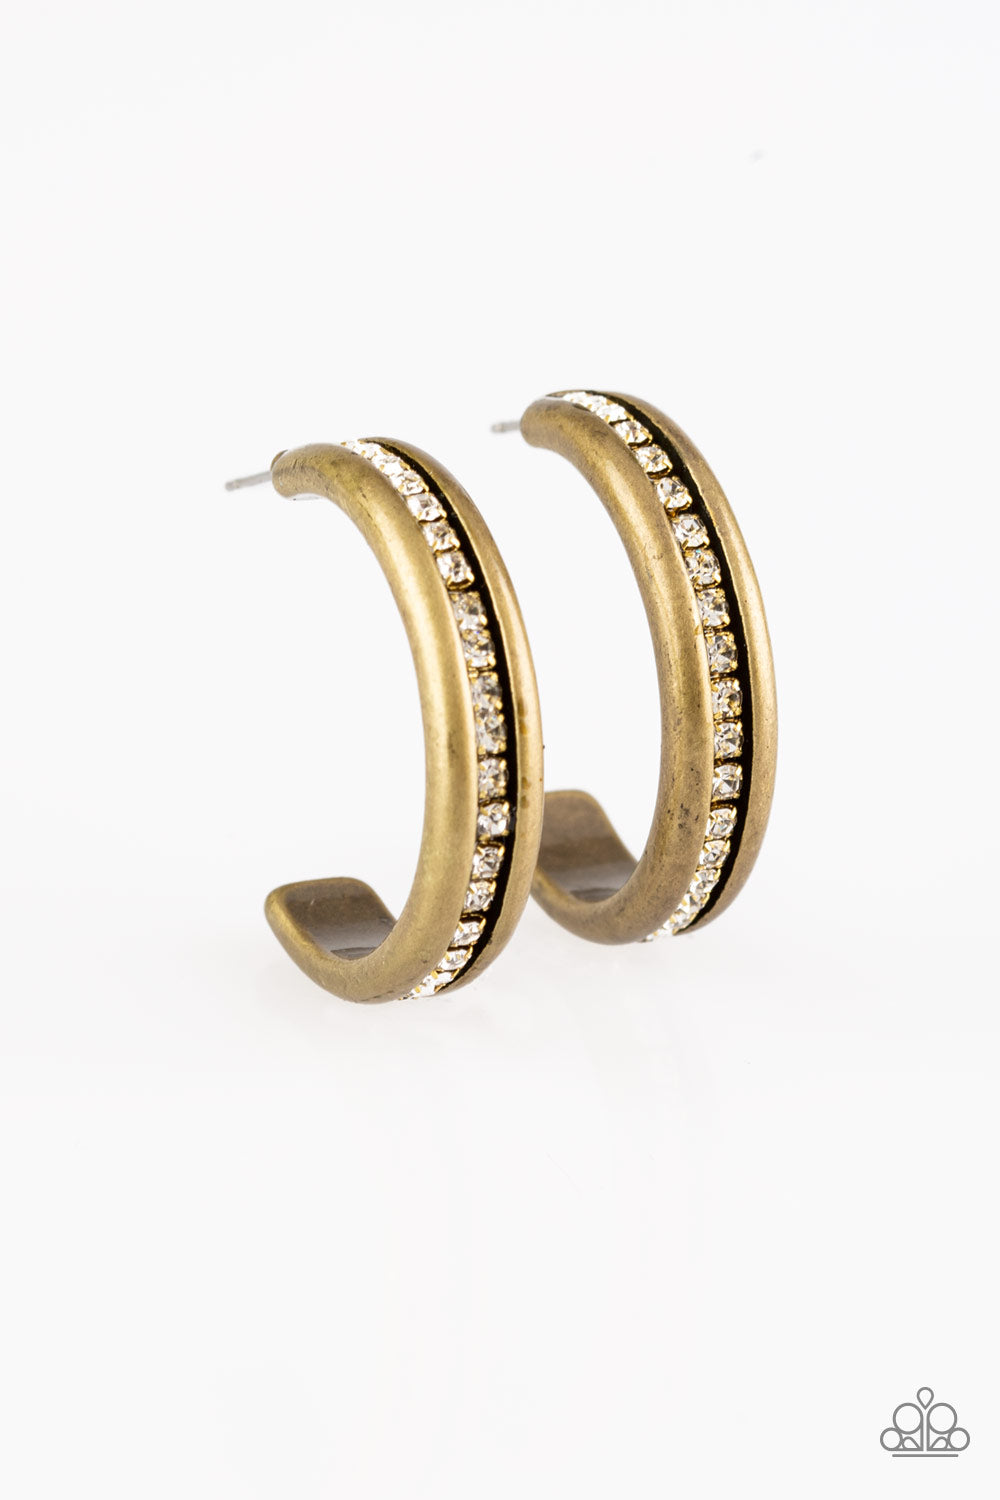 5th Avenue Fashionista - Brass Earrings